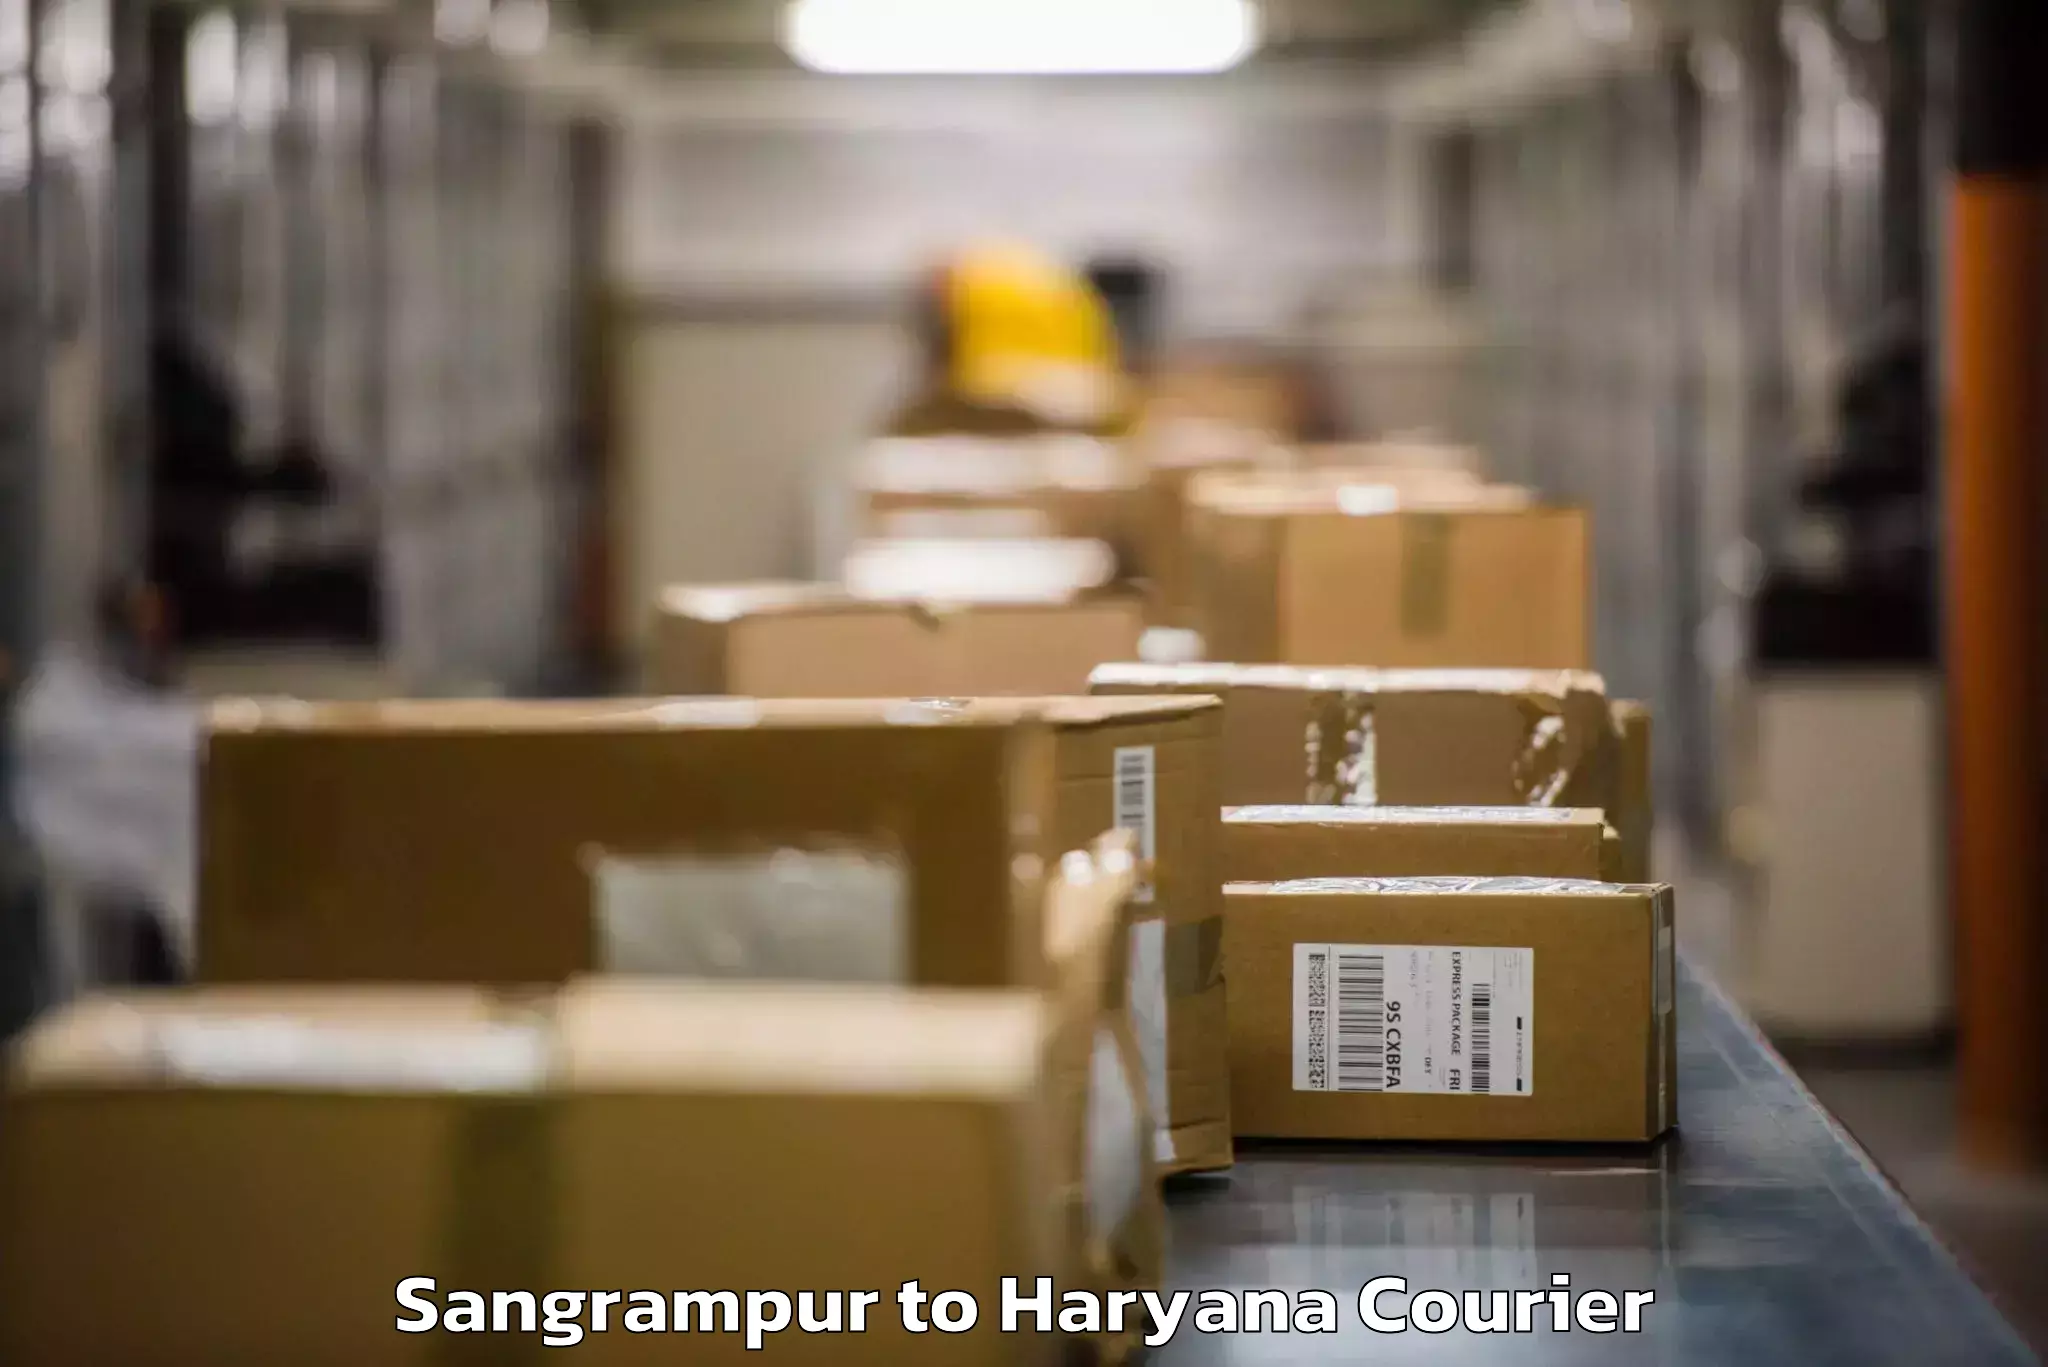 Luggage transfer service Sangrampur to Panchkula